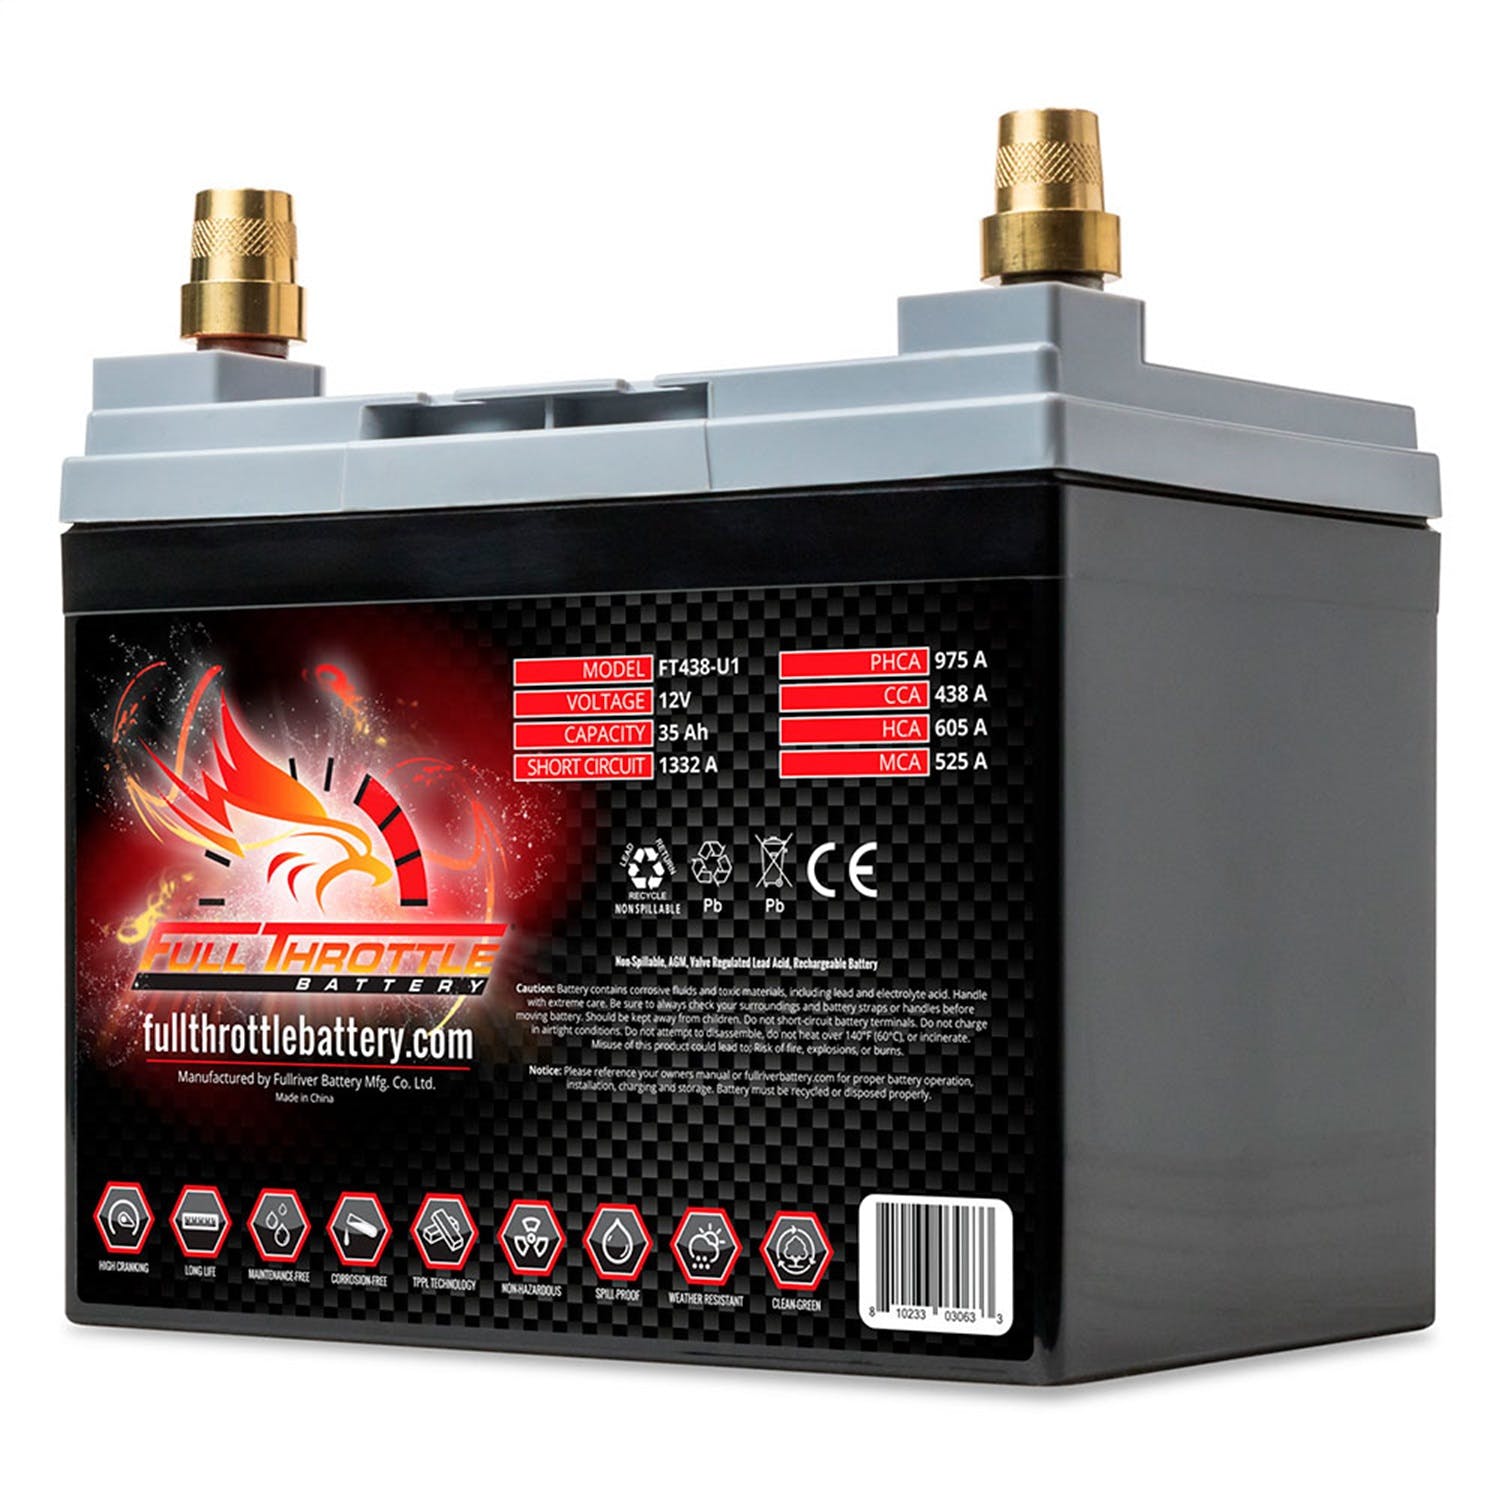 Fullriver Battery FT438-U1 Full Throttle 12V Automotive Battery